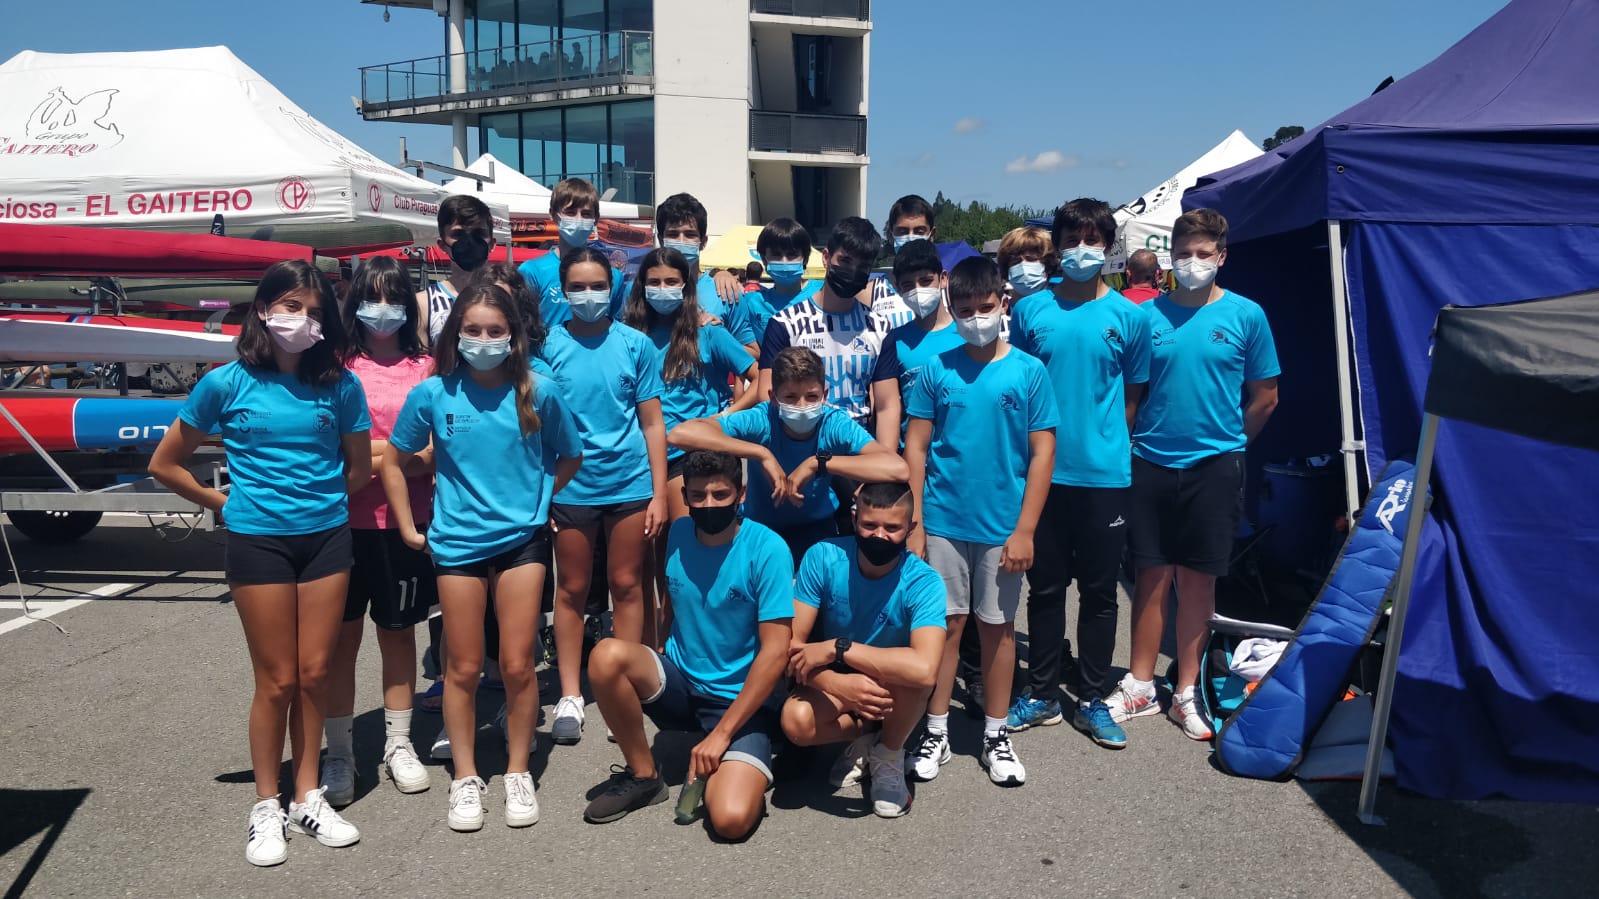 Campeonato de España de Jóvenes Promesas de Piragüismo